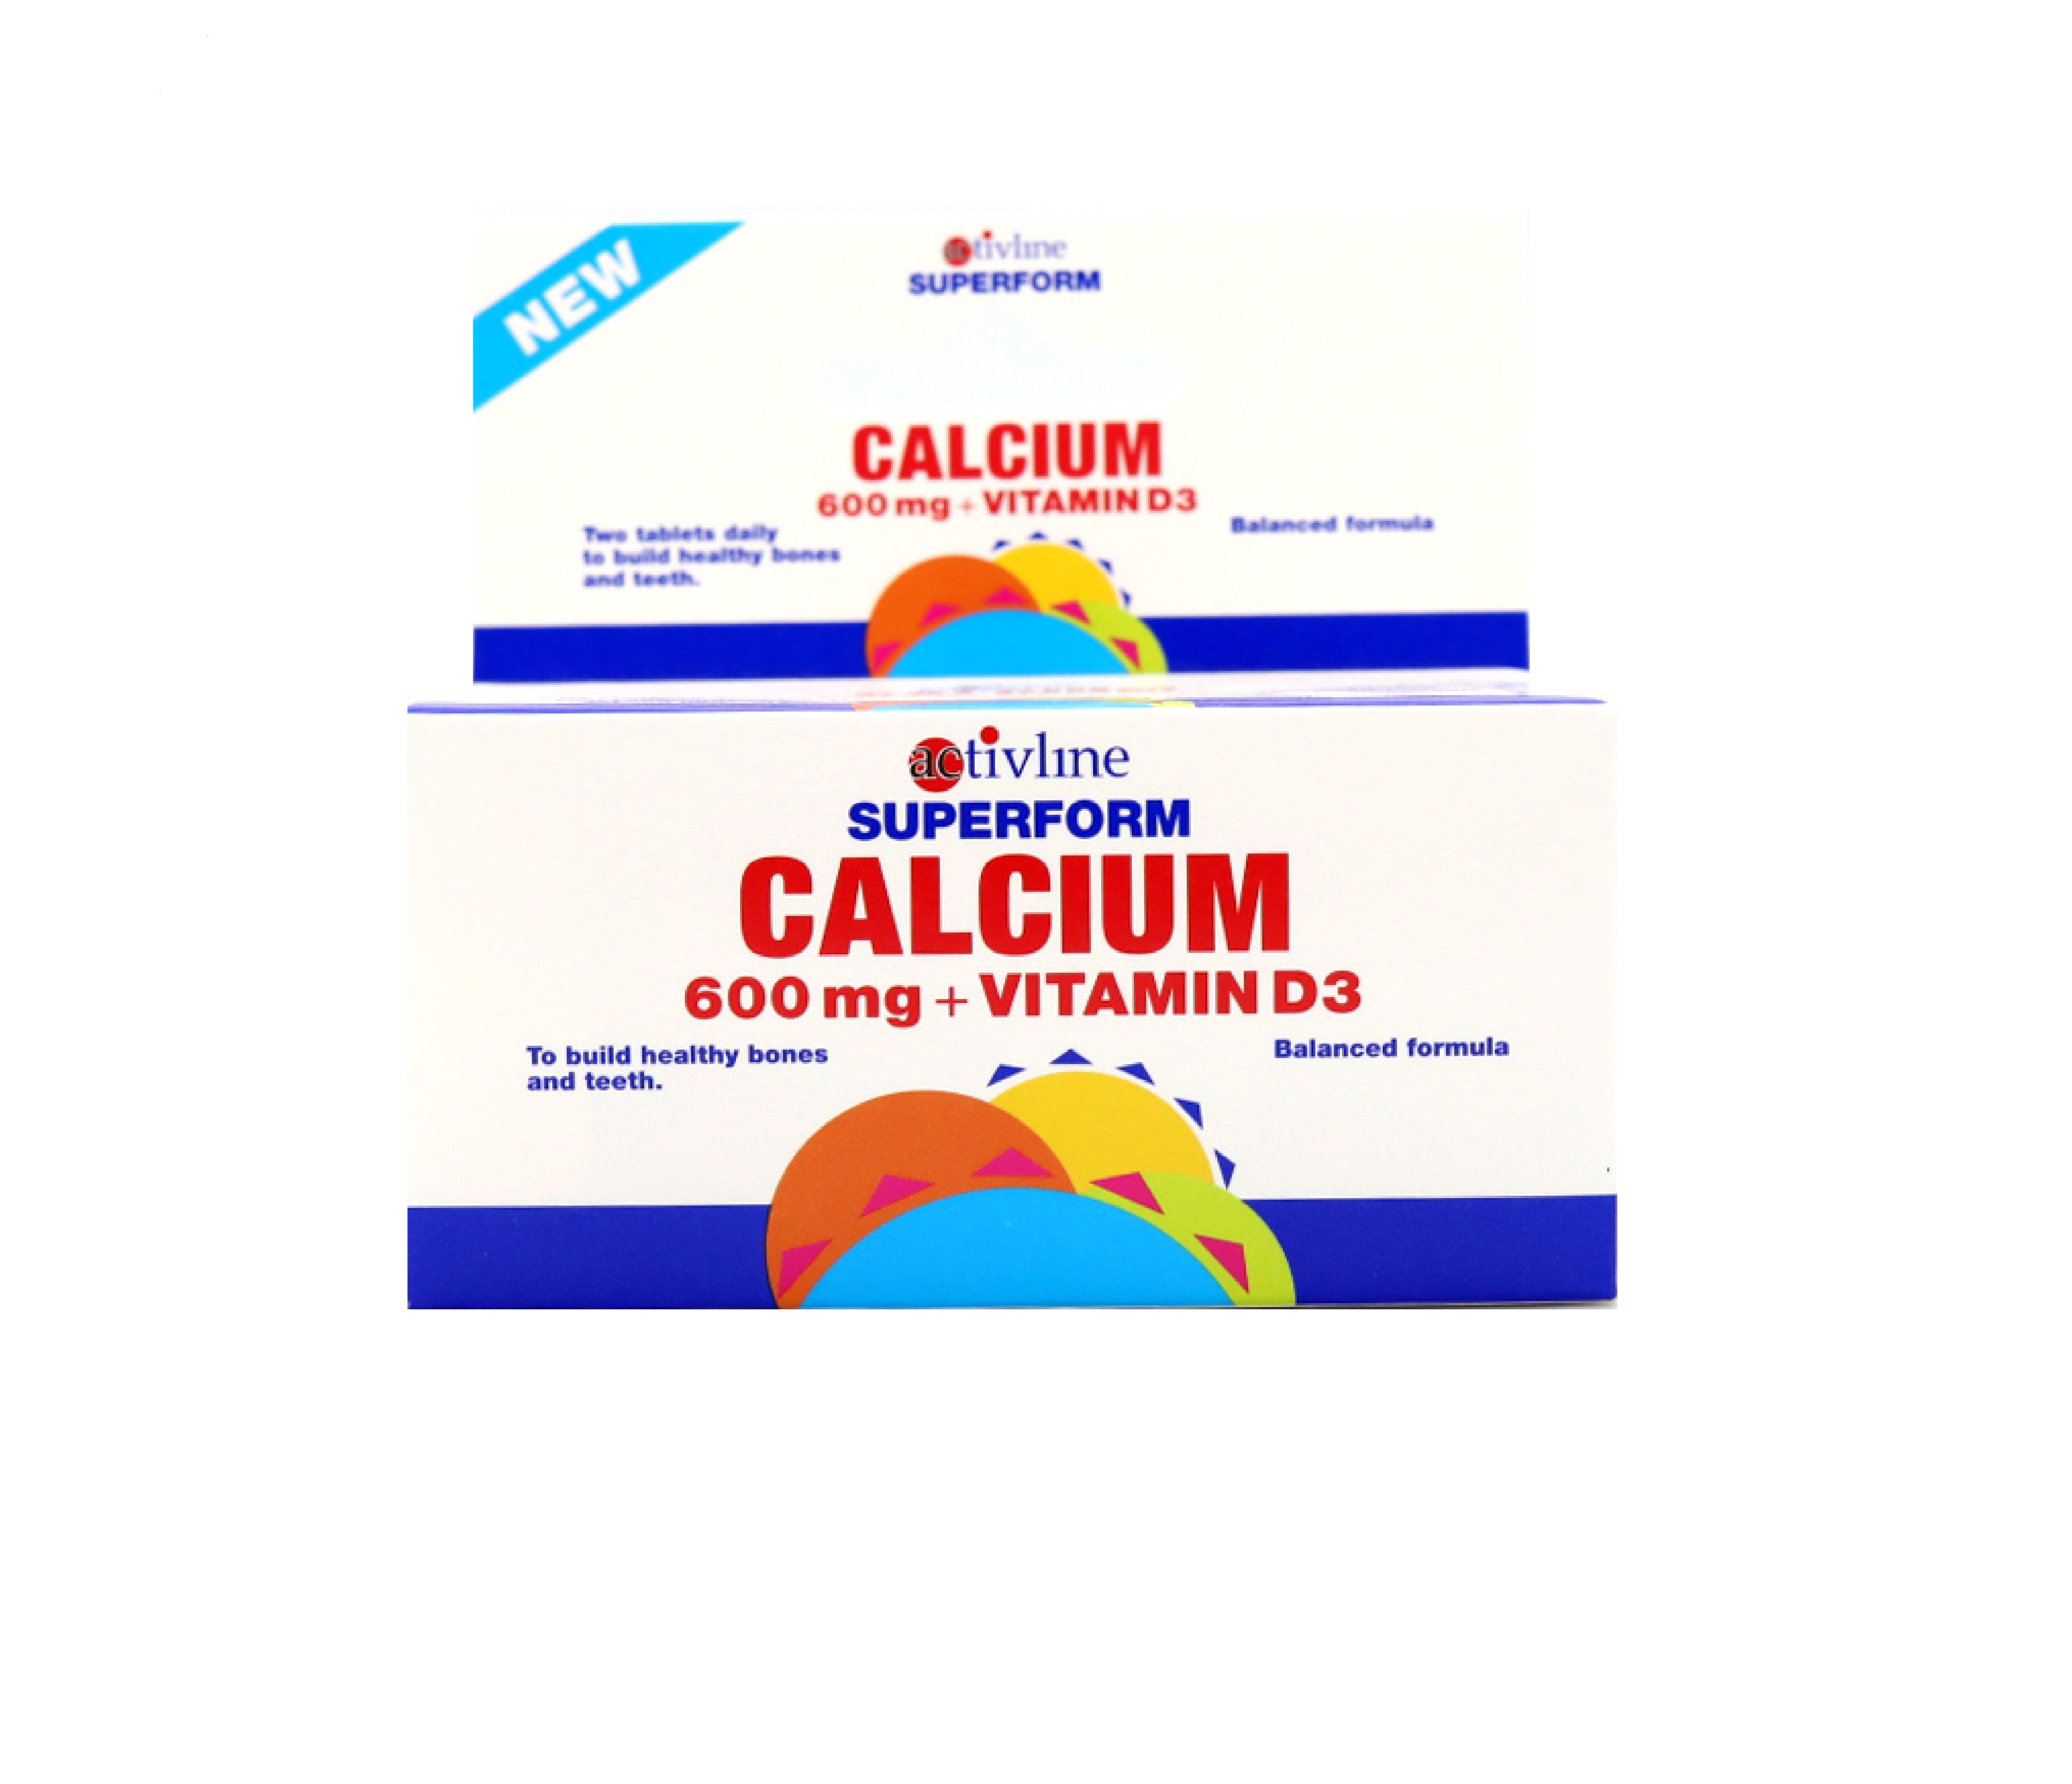 Activline Superform Calcium 600mg +Vitamin D3 60s | Al Mutawa ...